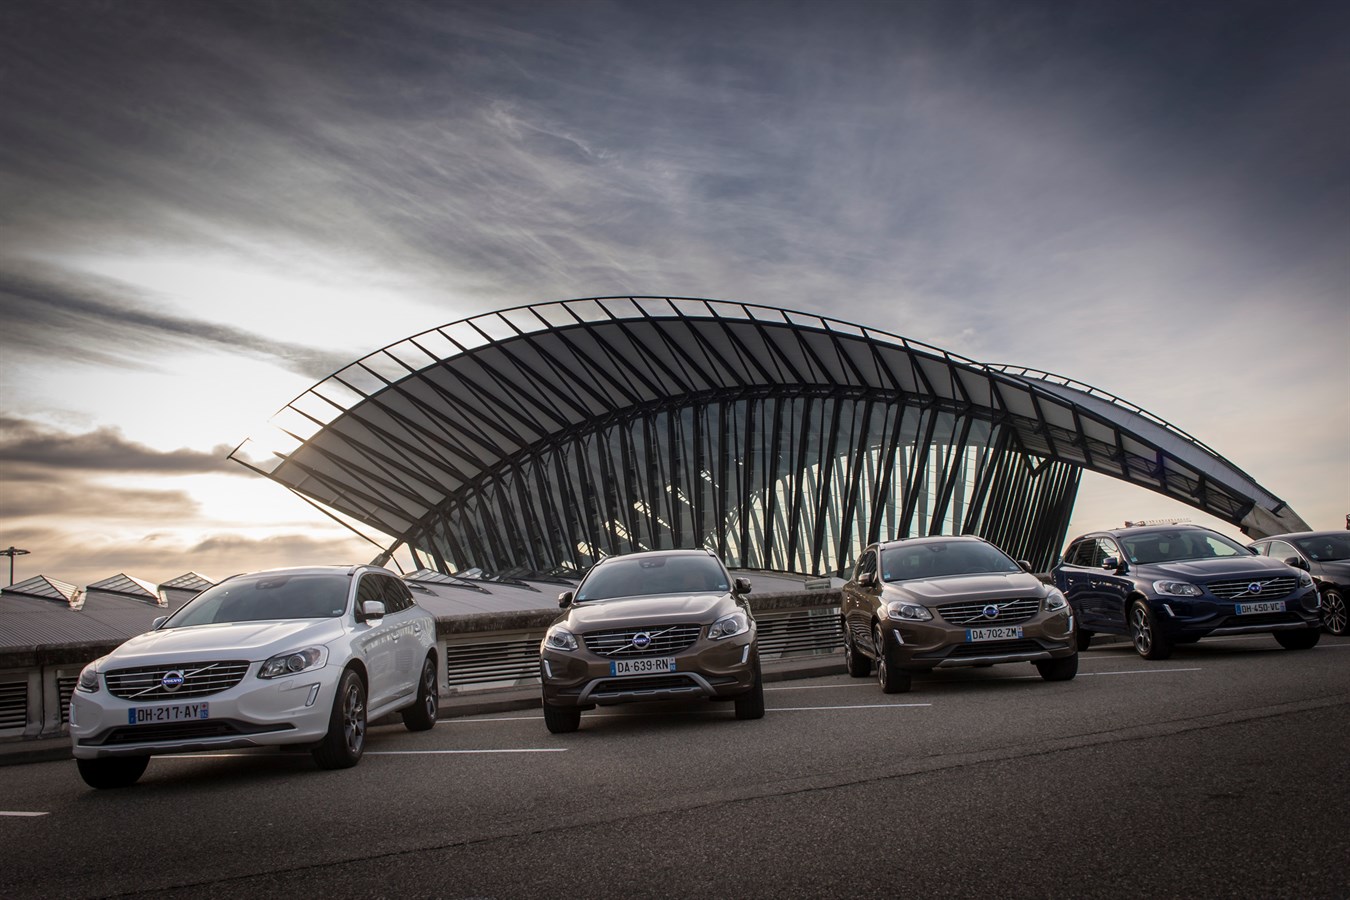 Gamme Volvo Drive-E année modèle 2015 - Photo Jean-Marc Lisse